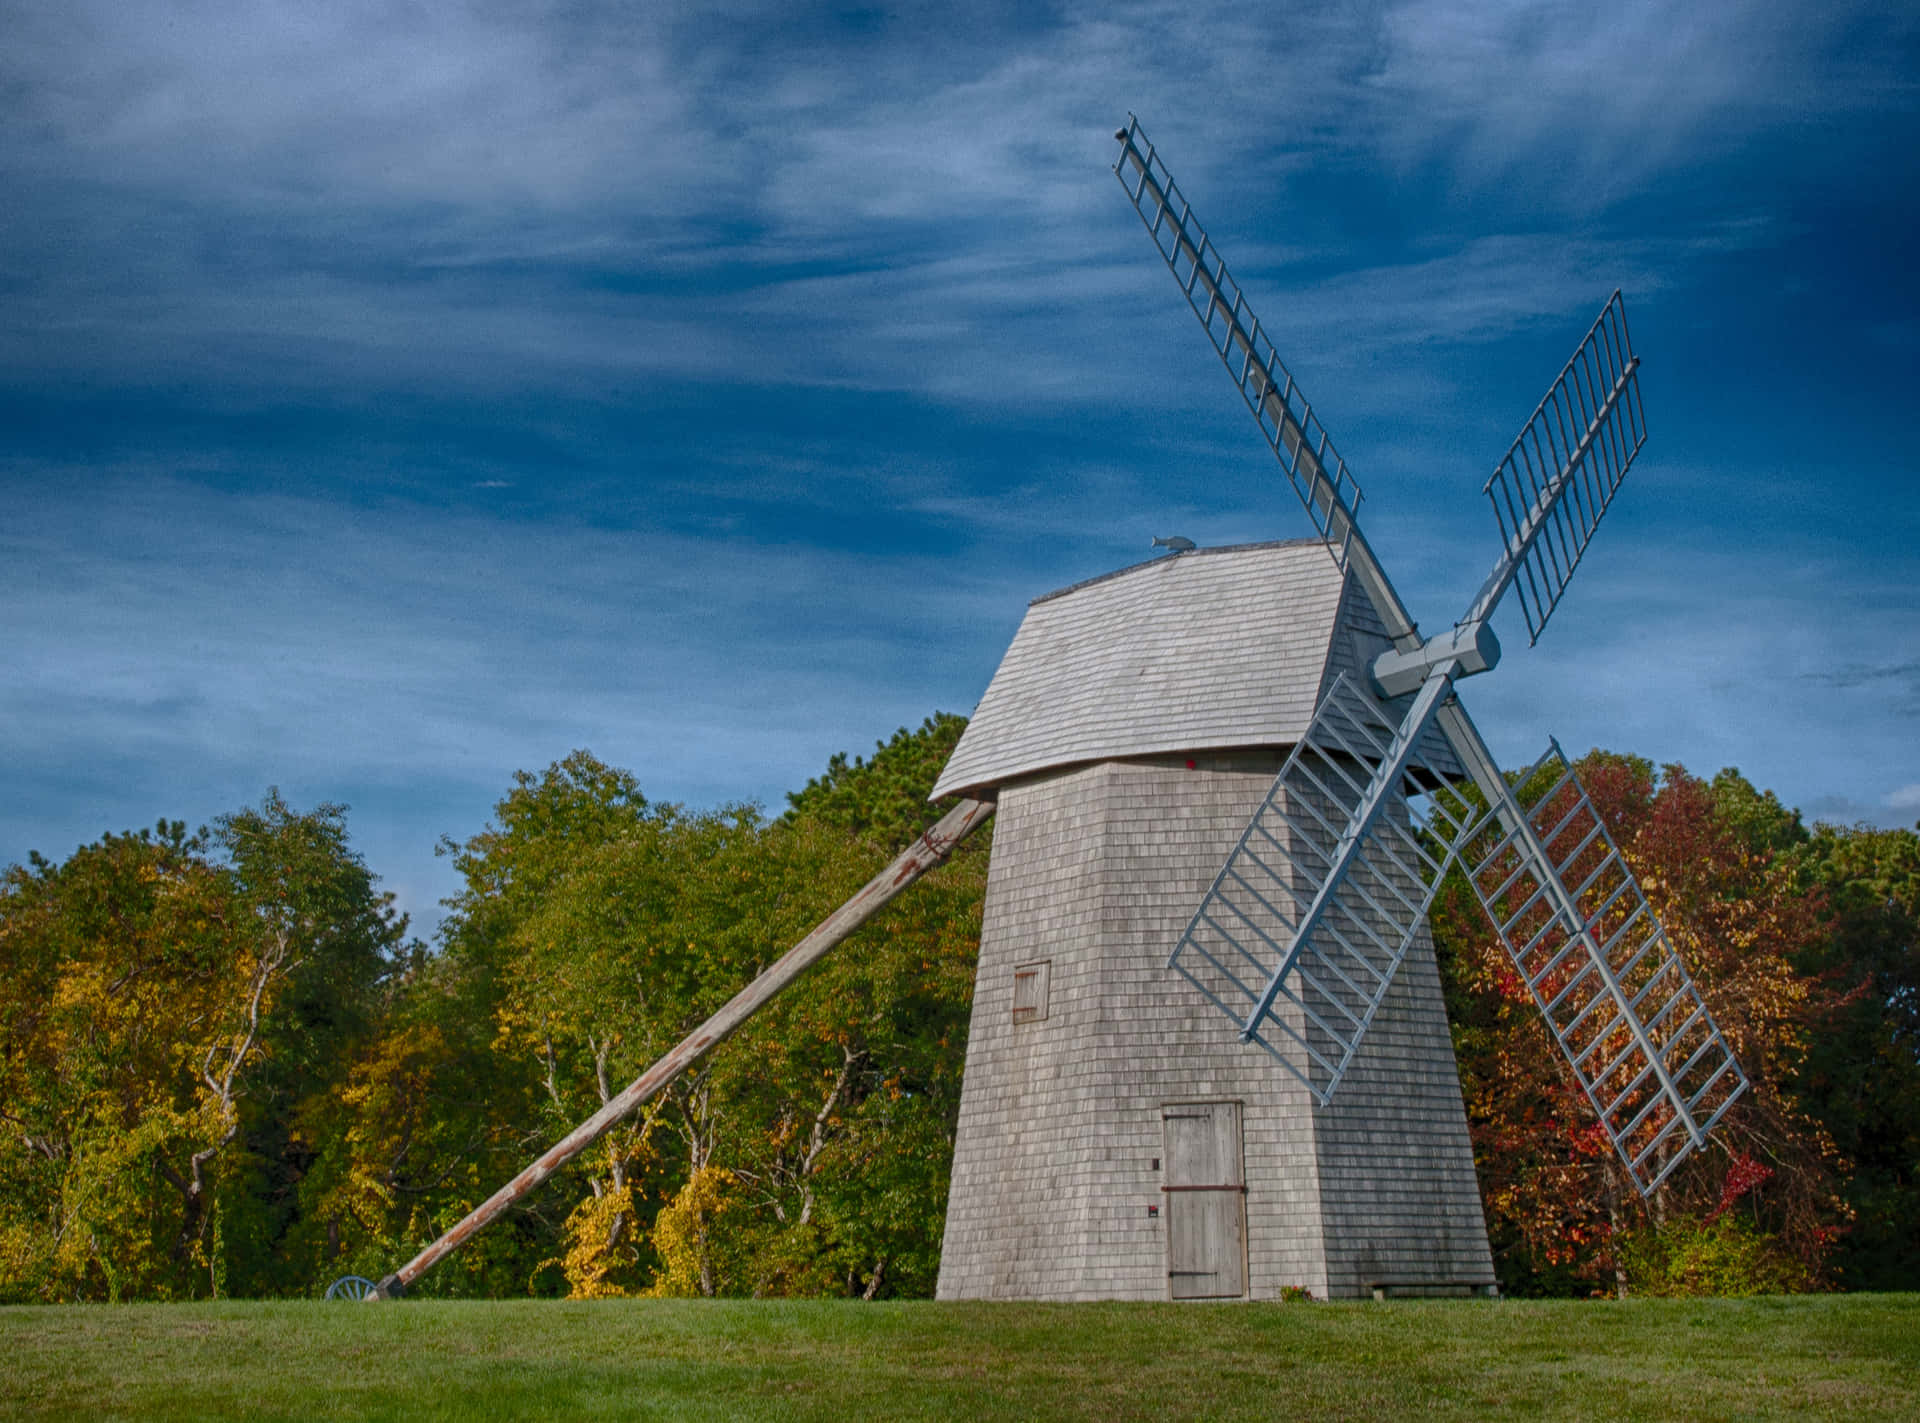 An Ornamental Windmill in a Field of Flowers